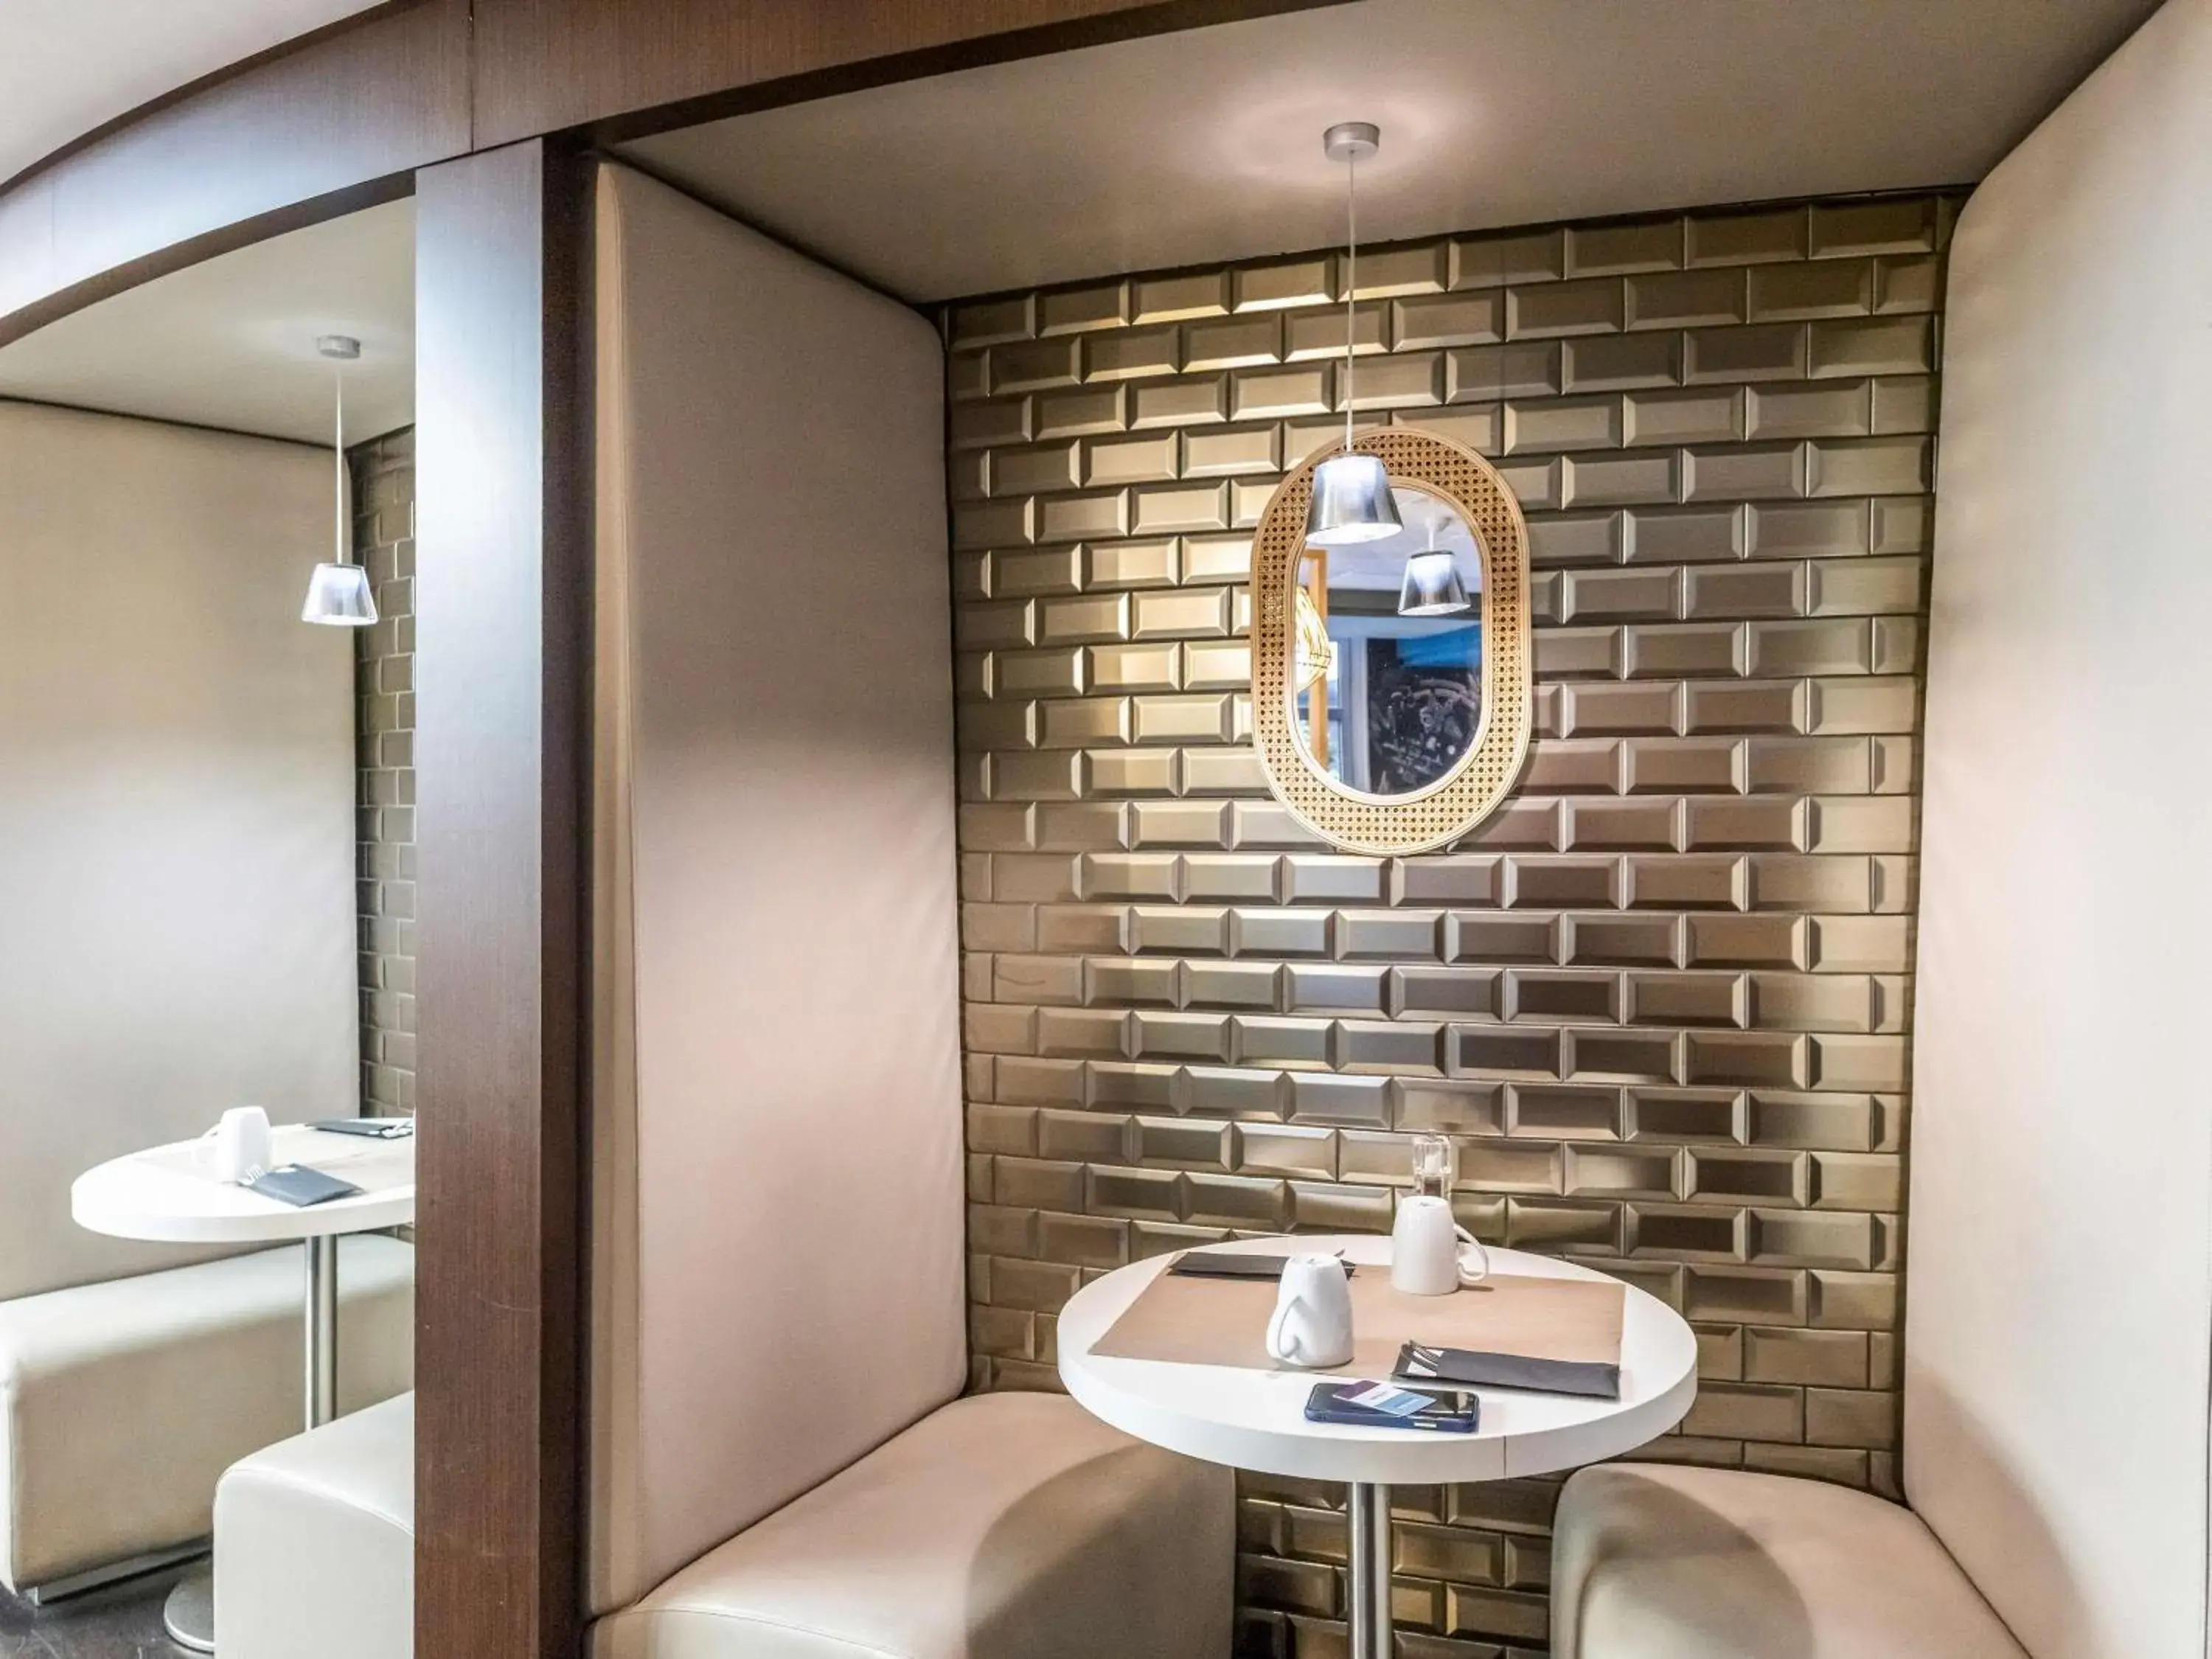 Restaurant/places to eat, Bathroom in Mercure Paris Massy Gare TGV